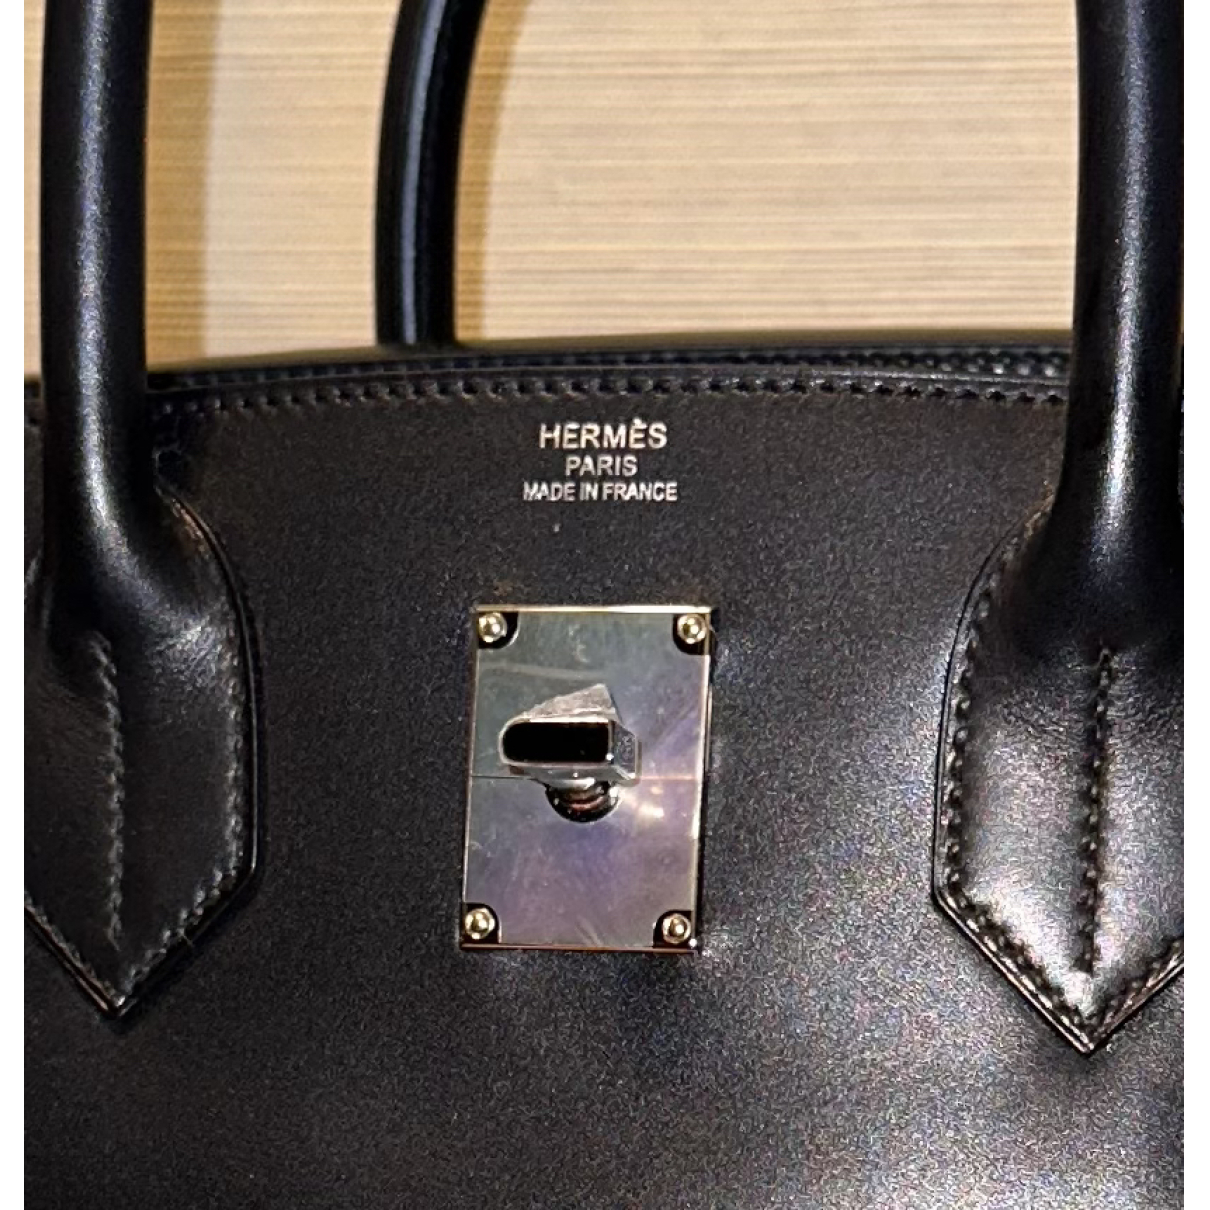 Black Haut à Courroies Leather Handbag